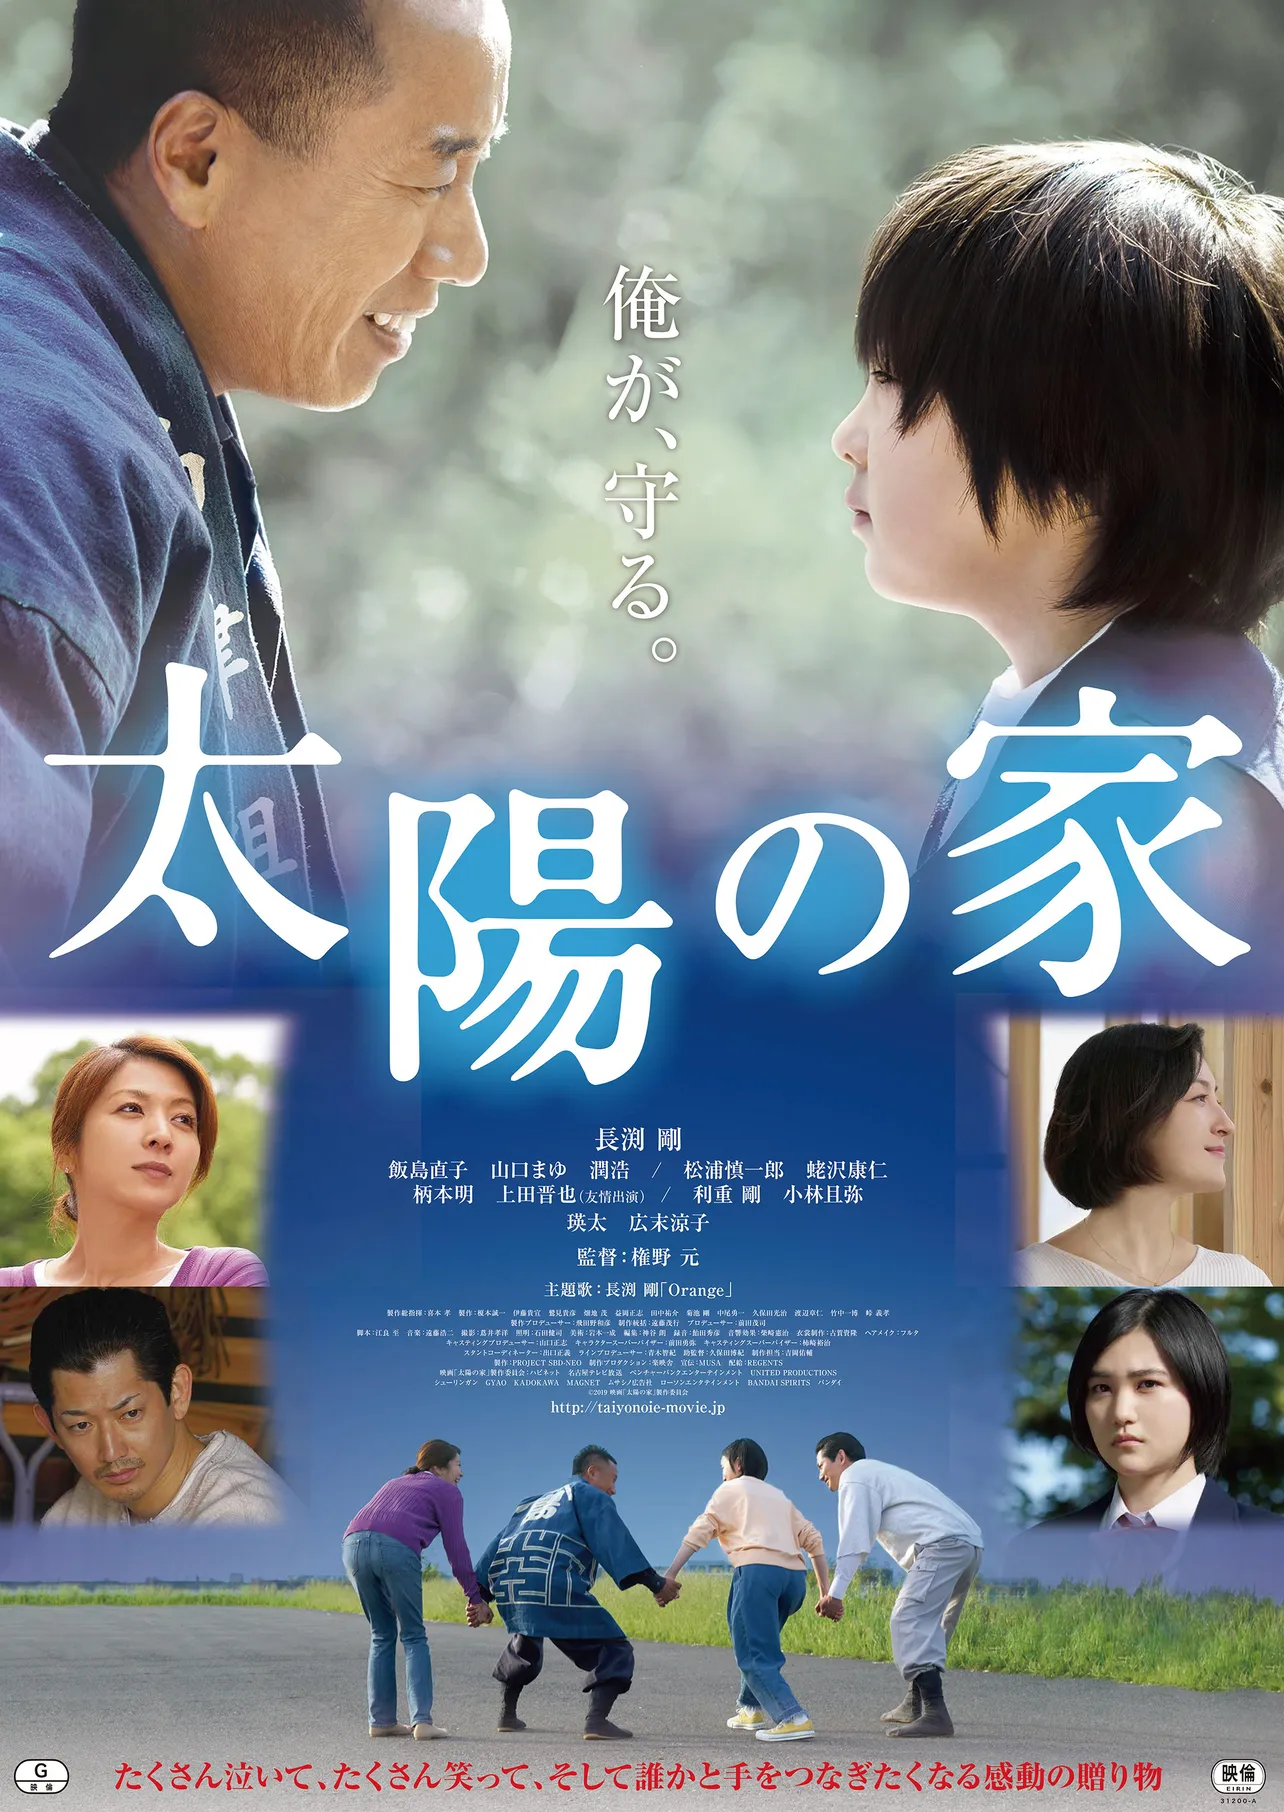 長渕剛の主演映画「太陽の家」の公開日が2020年1月17日(金)と決定